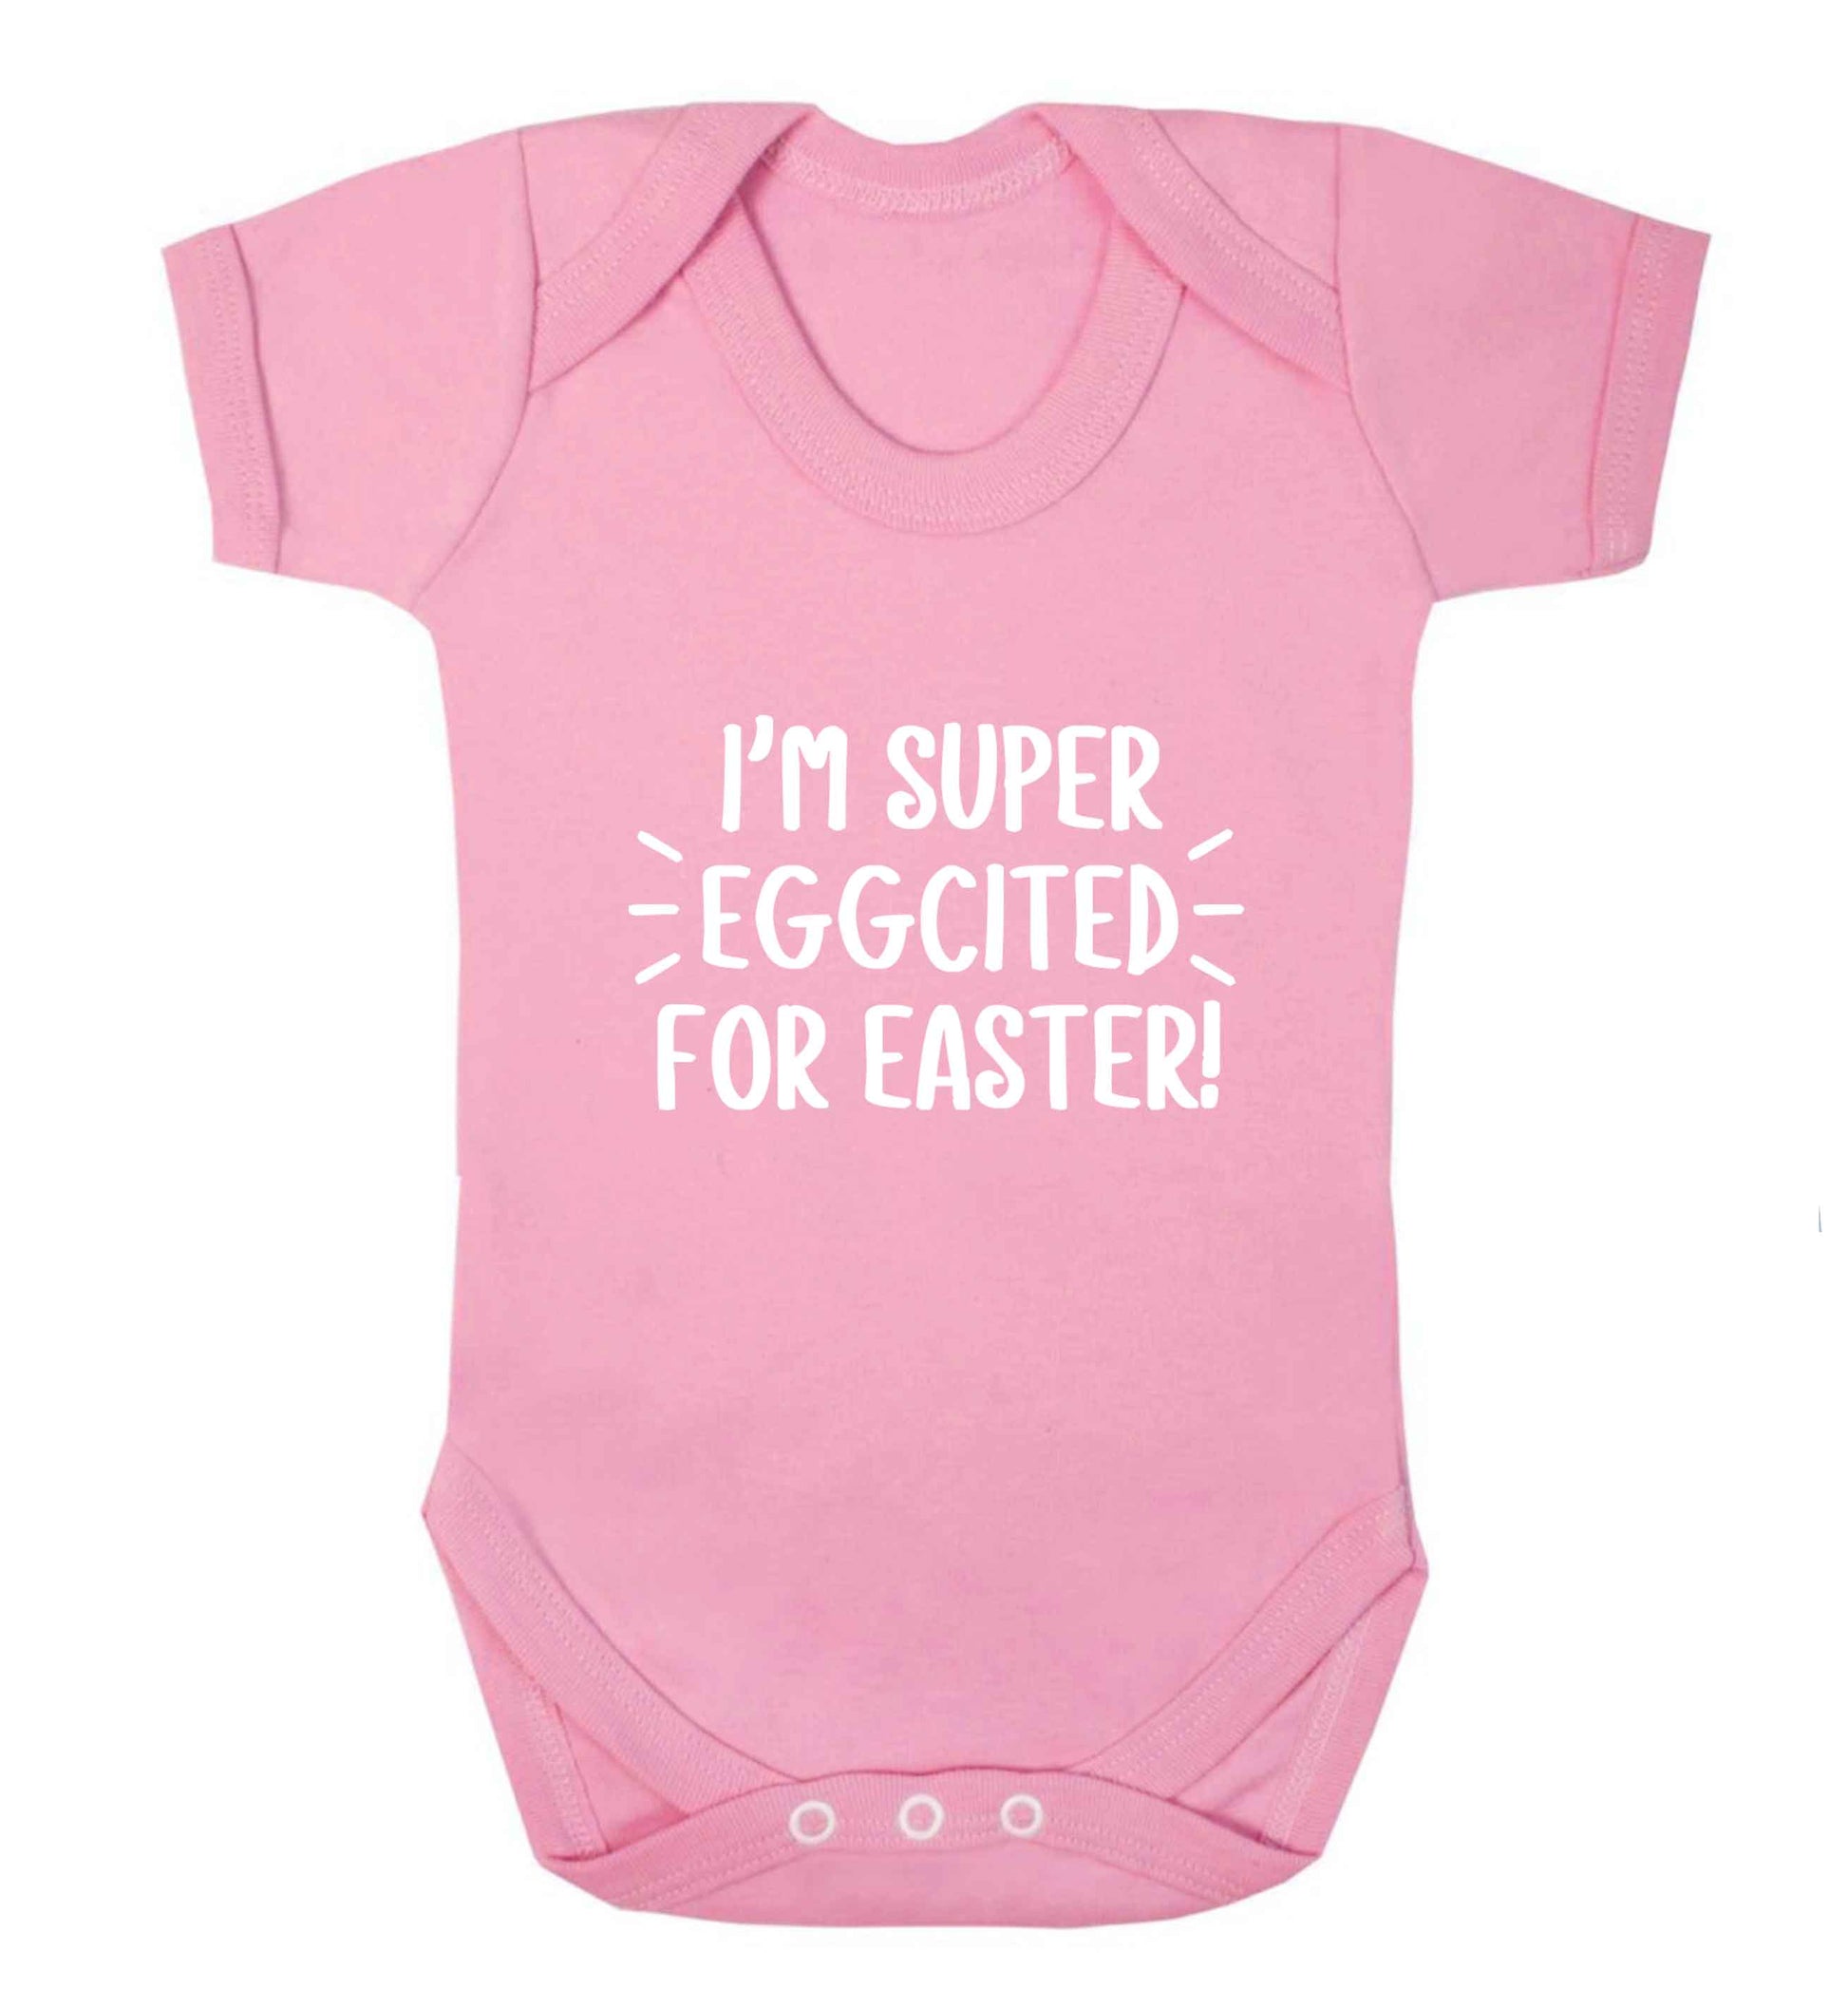 I'm super eggcited for Easter baby vest pale pink 18-24 months